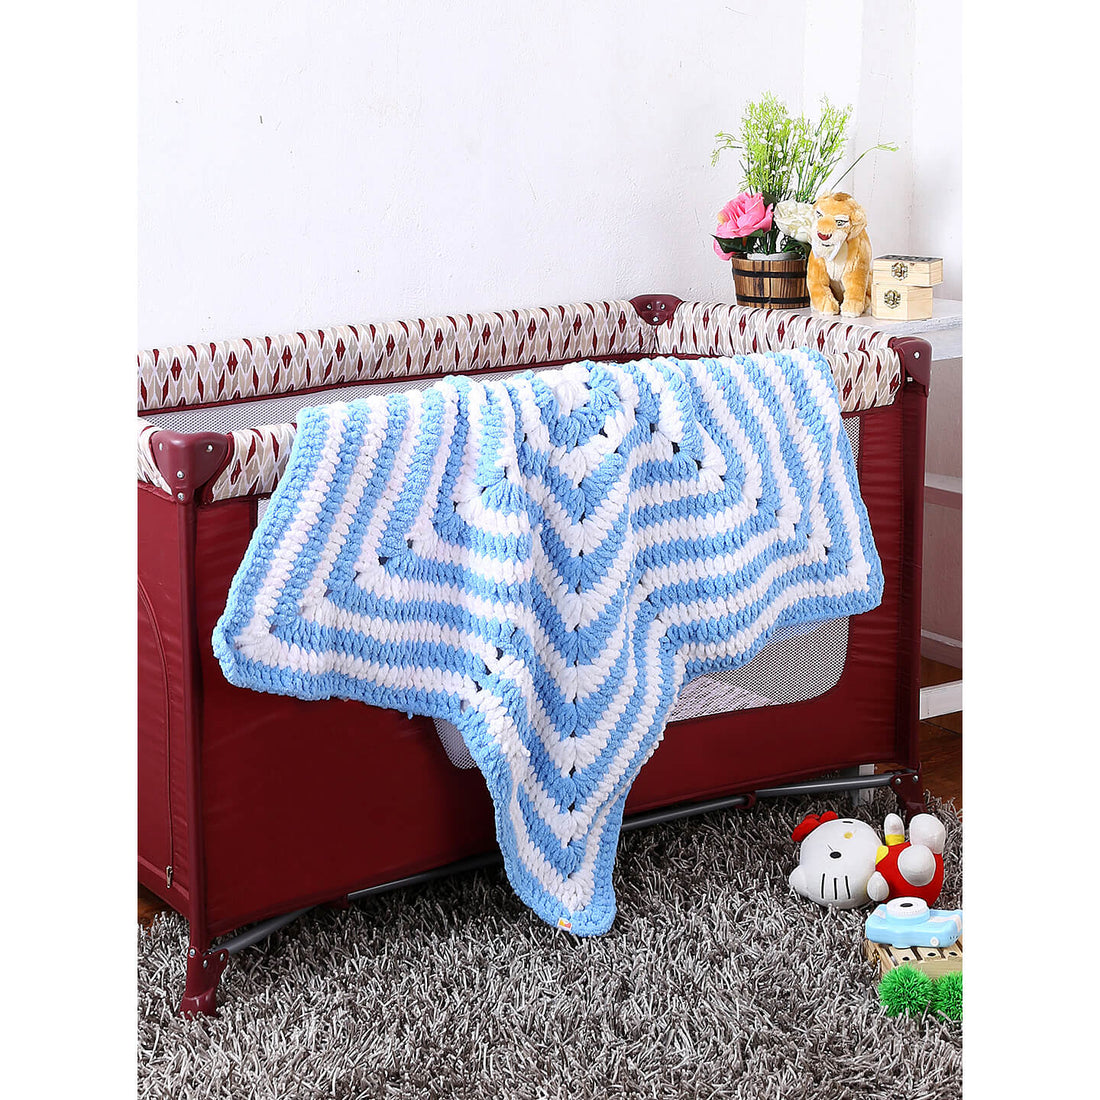 Soft Chenille Blue Star Baby Blanket - Blue, White 2731